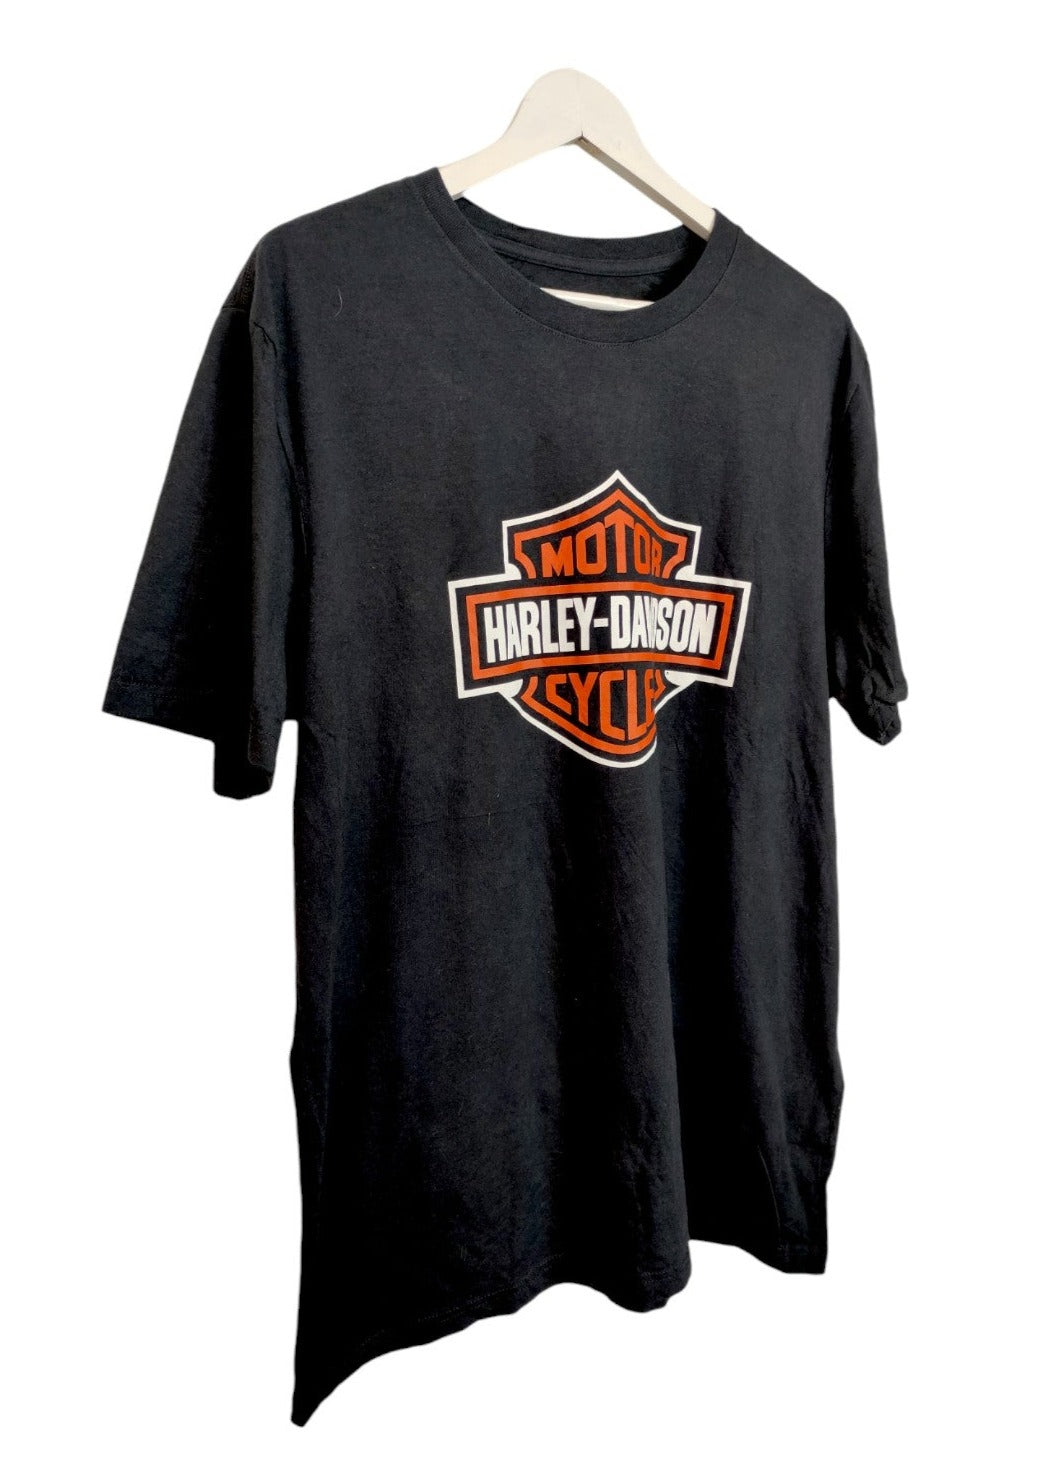 Ανδρική Μπλούζα - T- Shirt HARLEY DAVINSON σε Μαύρο χρώμα (L/XL)